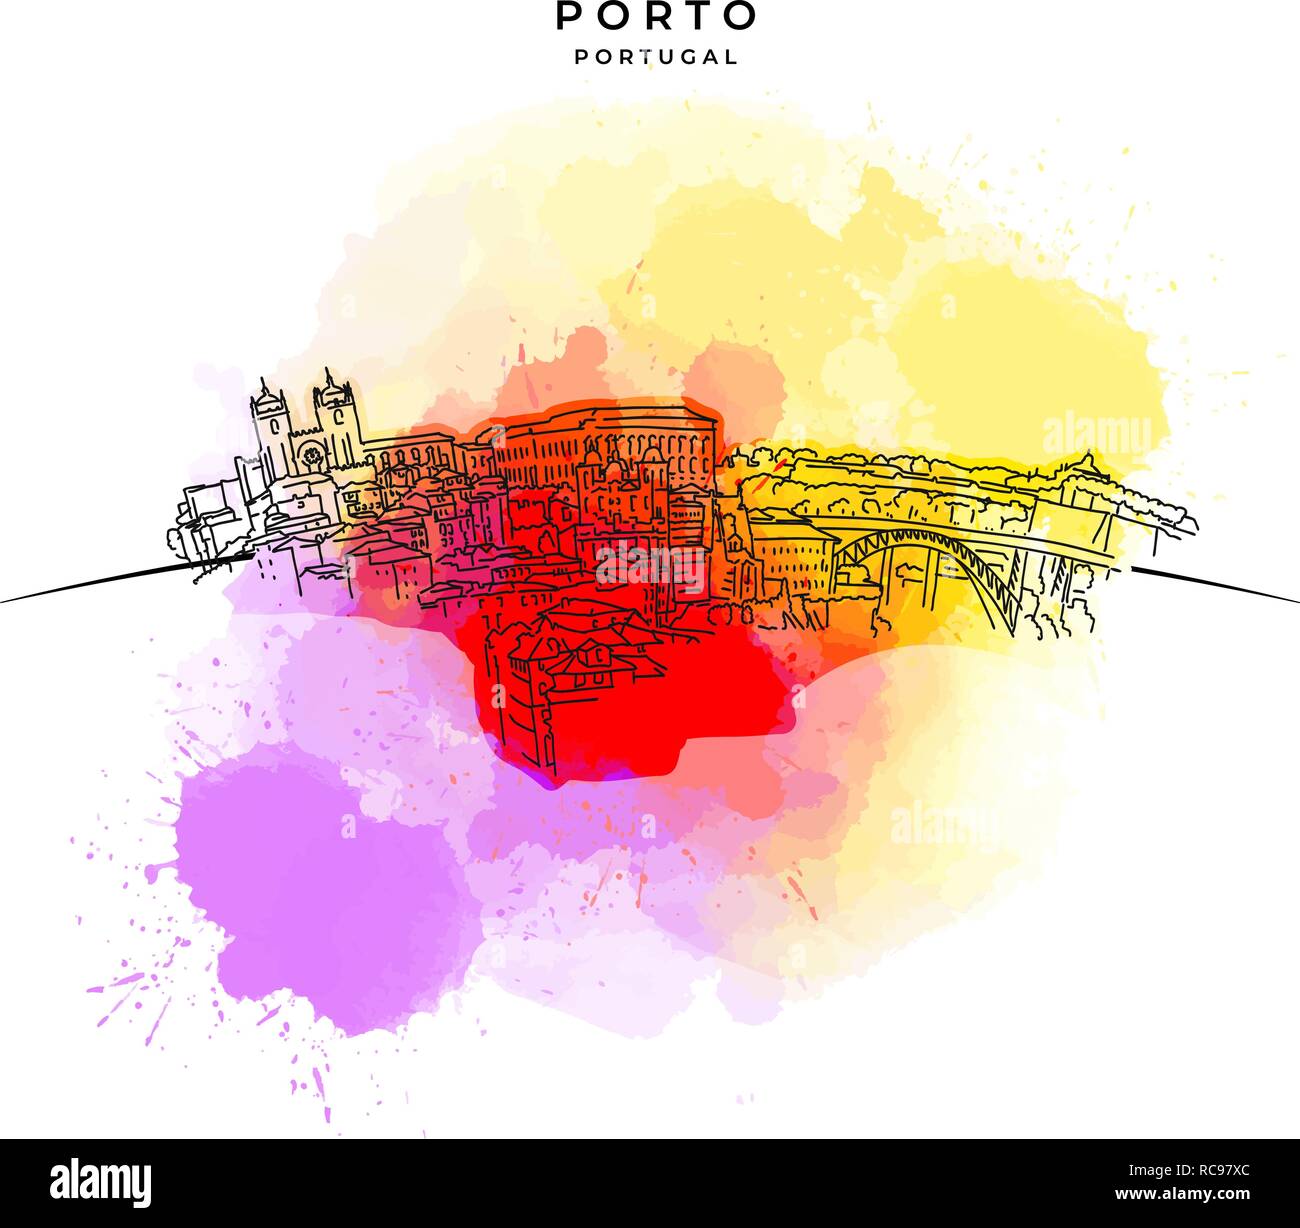 Sui Tetti di Porto. Disegnate a mano illustrazione vettoriale. Famose destinazioni di viaggio serie. Illustrazione Vettoriale